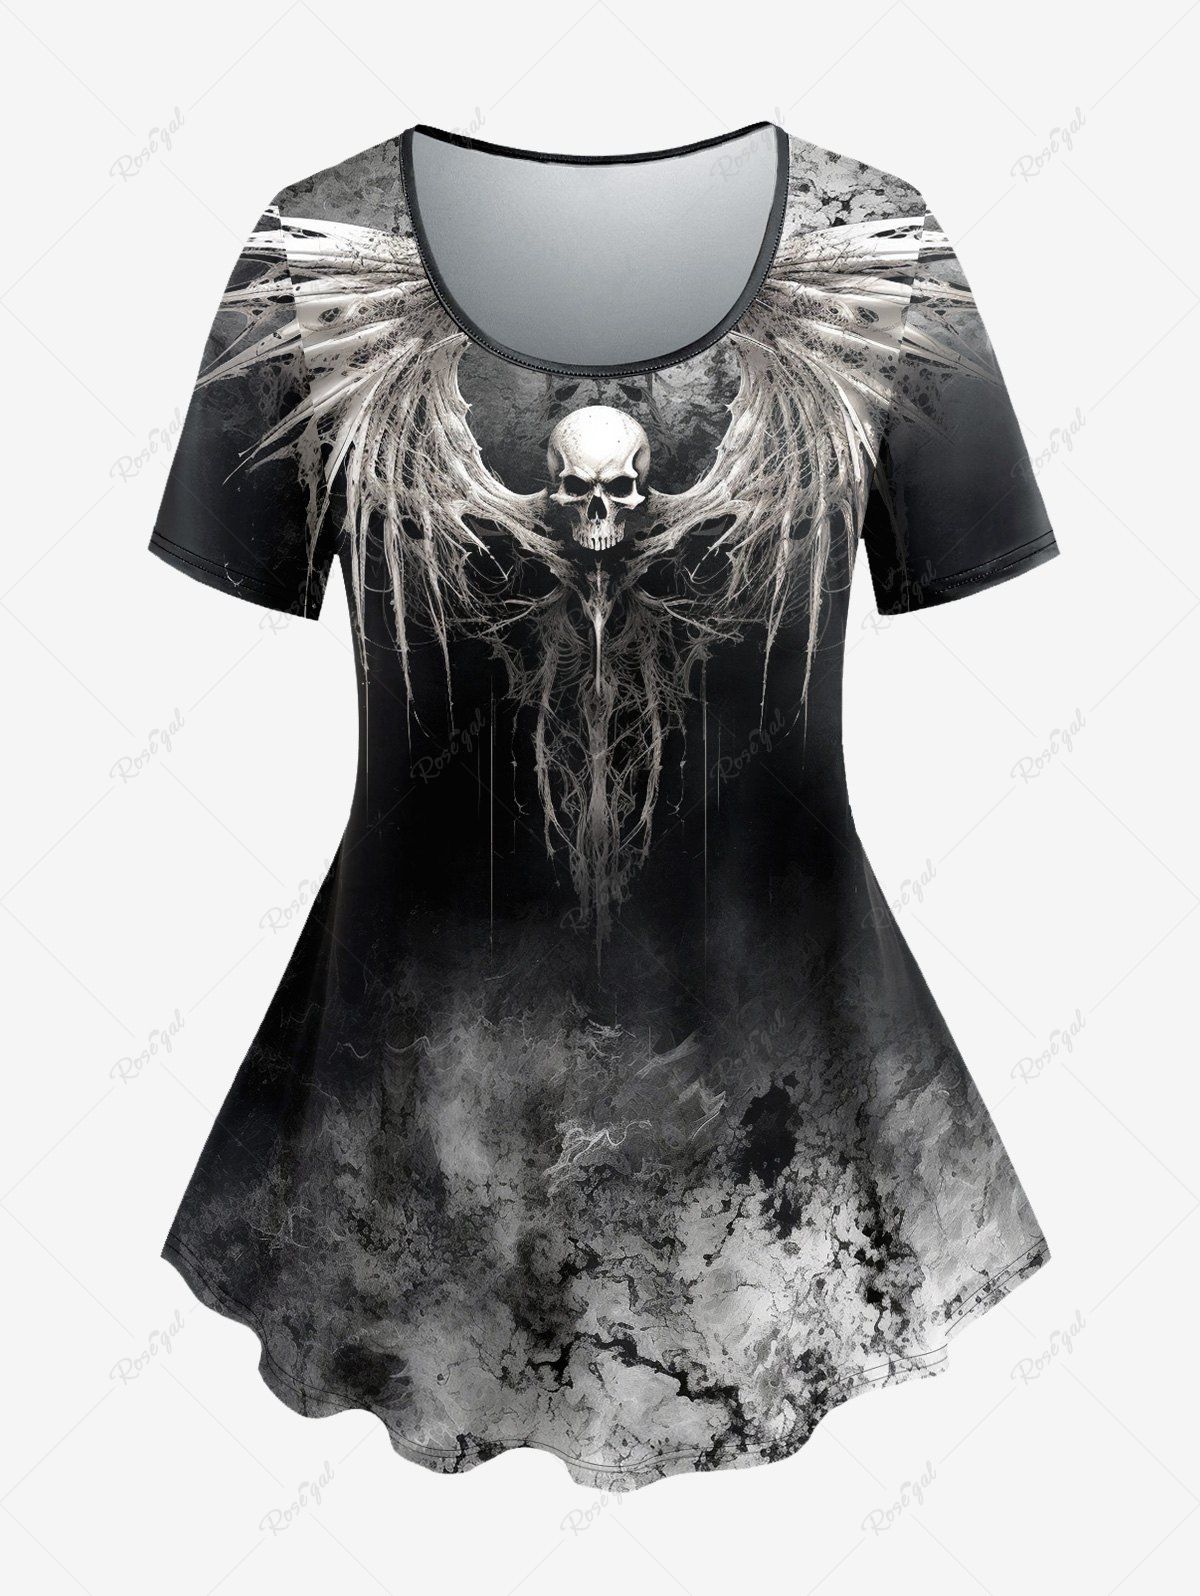 T-shirt D'Halloween Teinté Crâne Ombrée Style Gothique Noir 4X